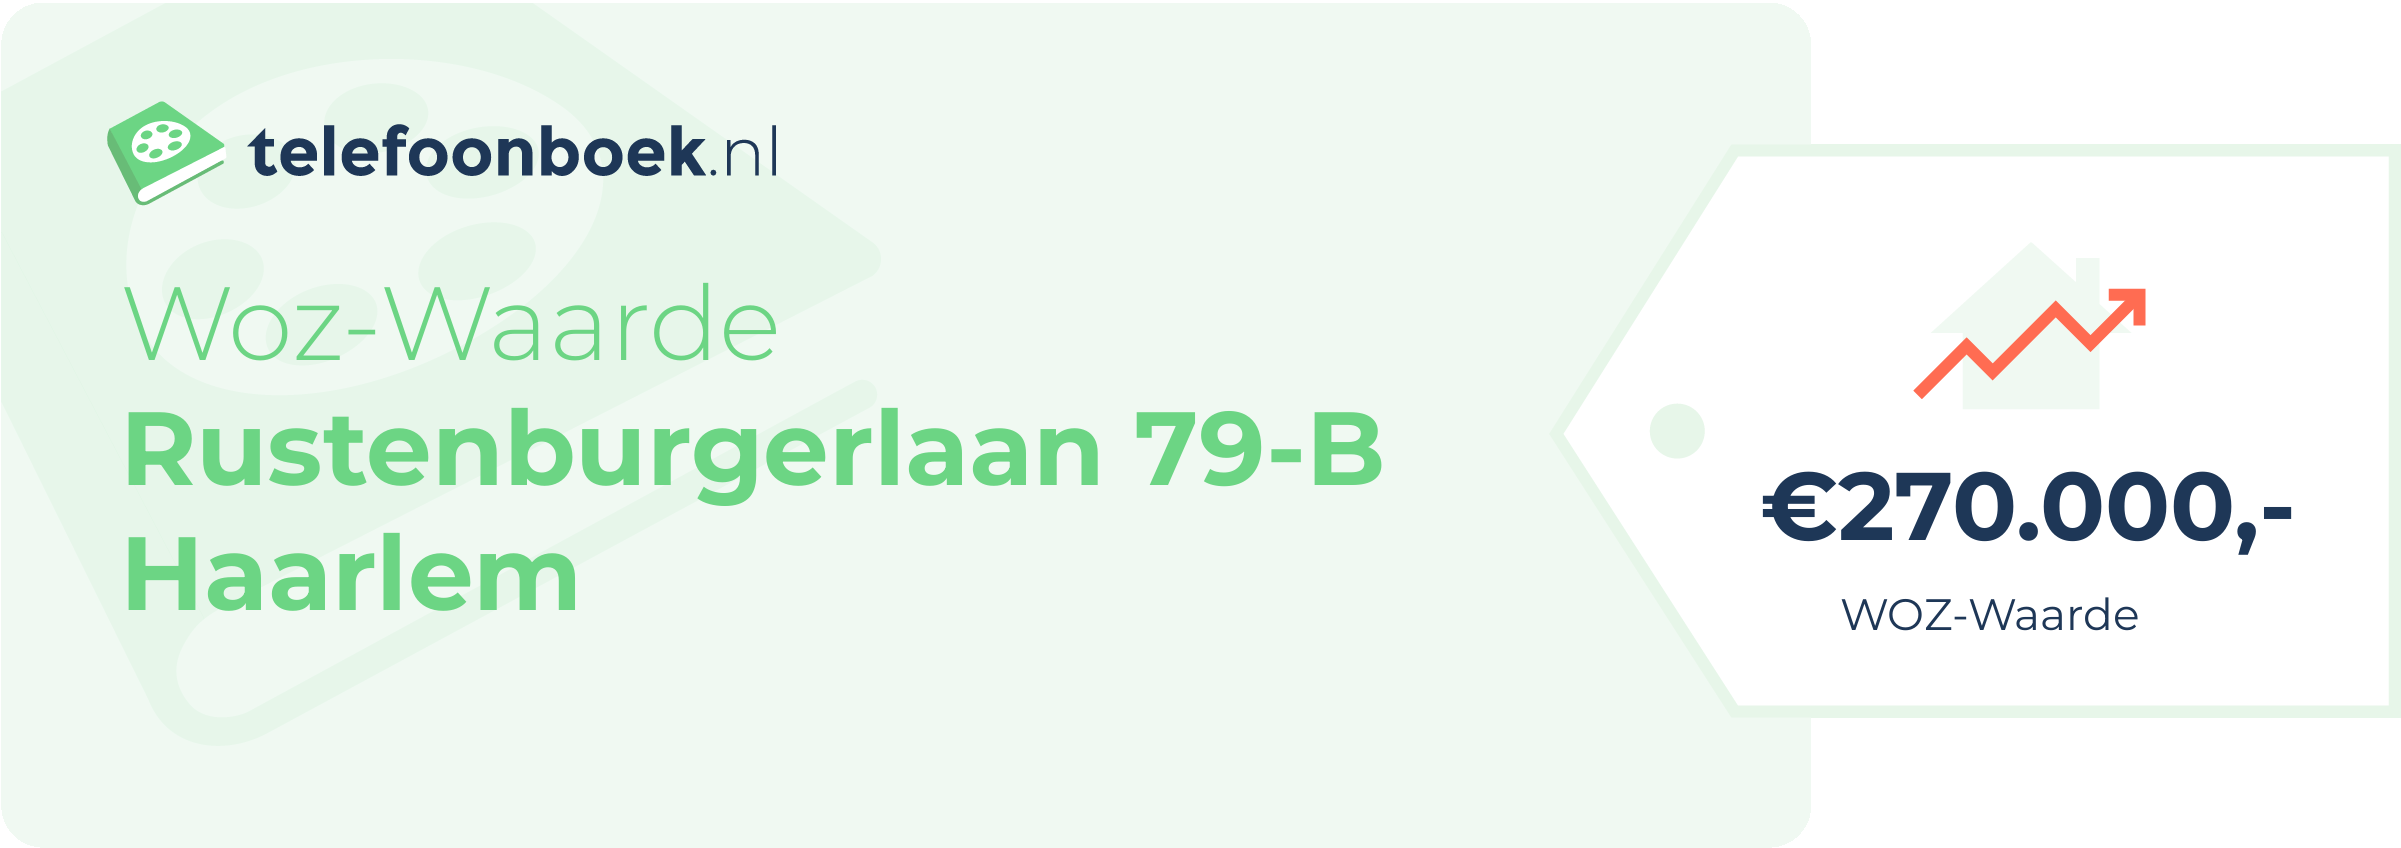 WOZ-waarde Rustenburgerlaan 79-B Haarlem